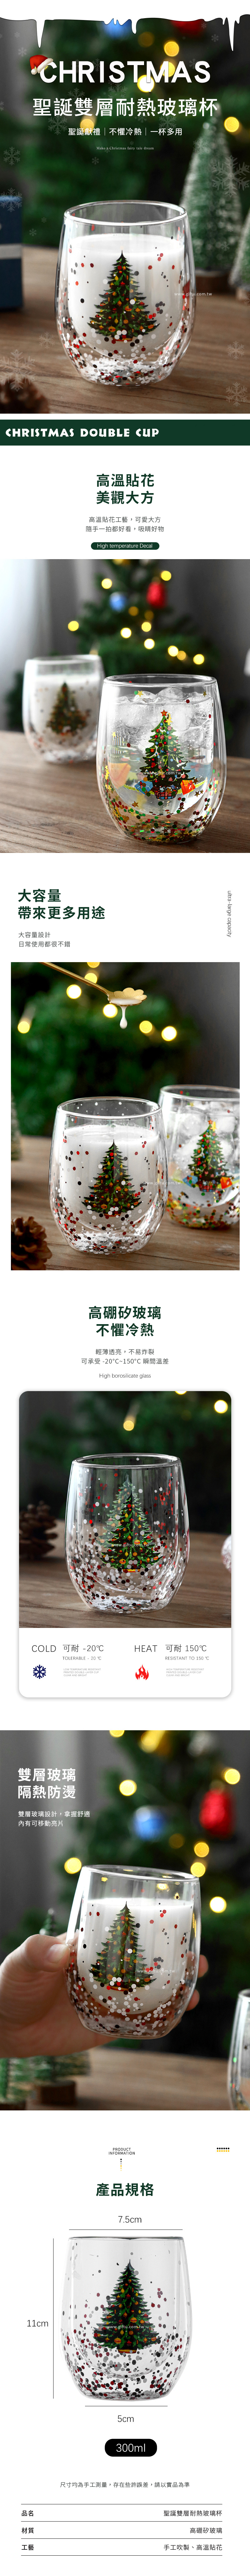 【3/29~5/31畢業季早鳥88折優惠】創意小物館 聖誕雙層耐熱玻璃杯 聖誕樹